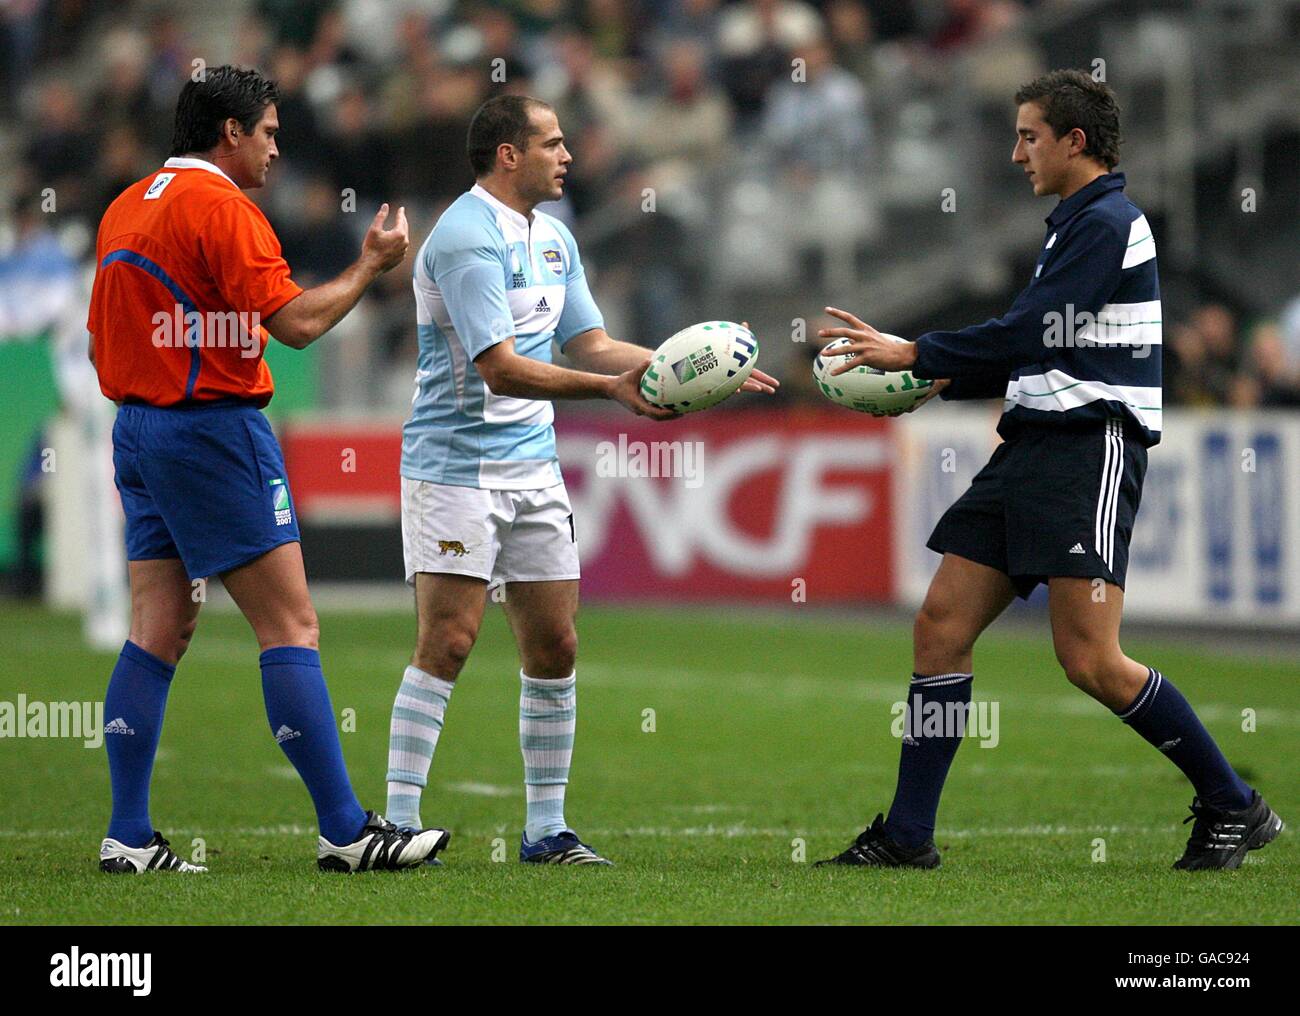 Rugby Union - IRB Rugby-Weltmeisterschaft 2007 - Halbfinale - Südafrika gegen Argentinien - Stade de France. Der Argentinier, der Torist, wechselt den Ball für seinen Torstoß Stockfoto